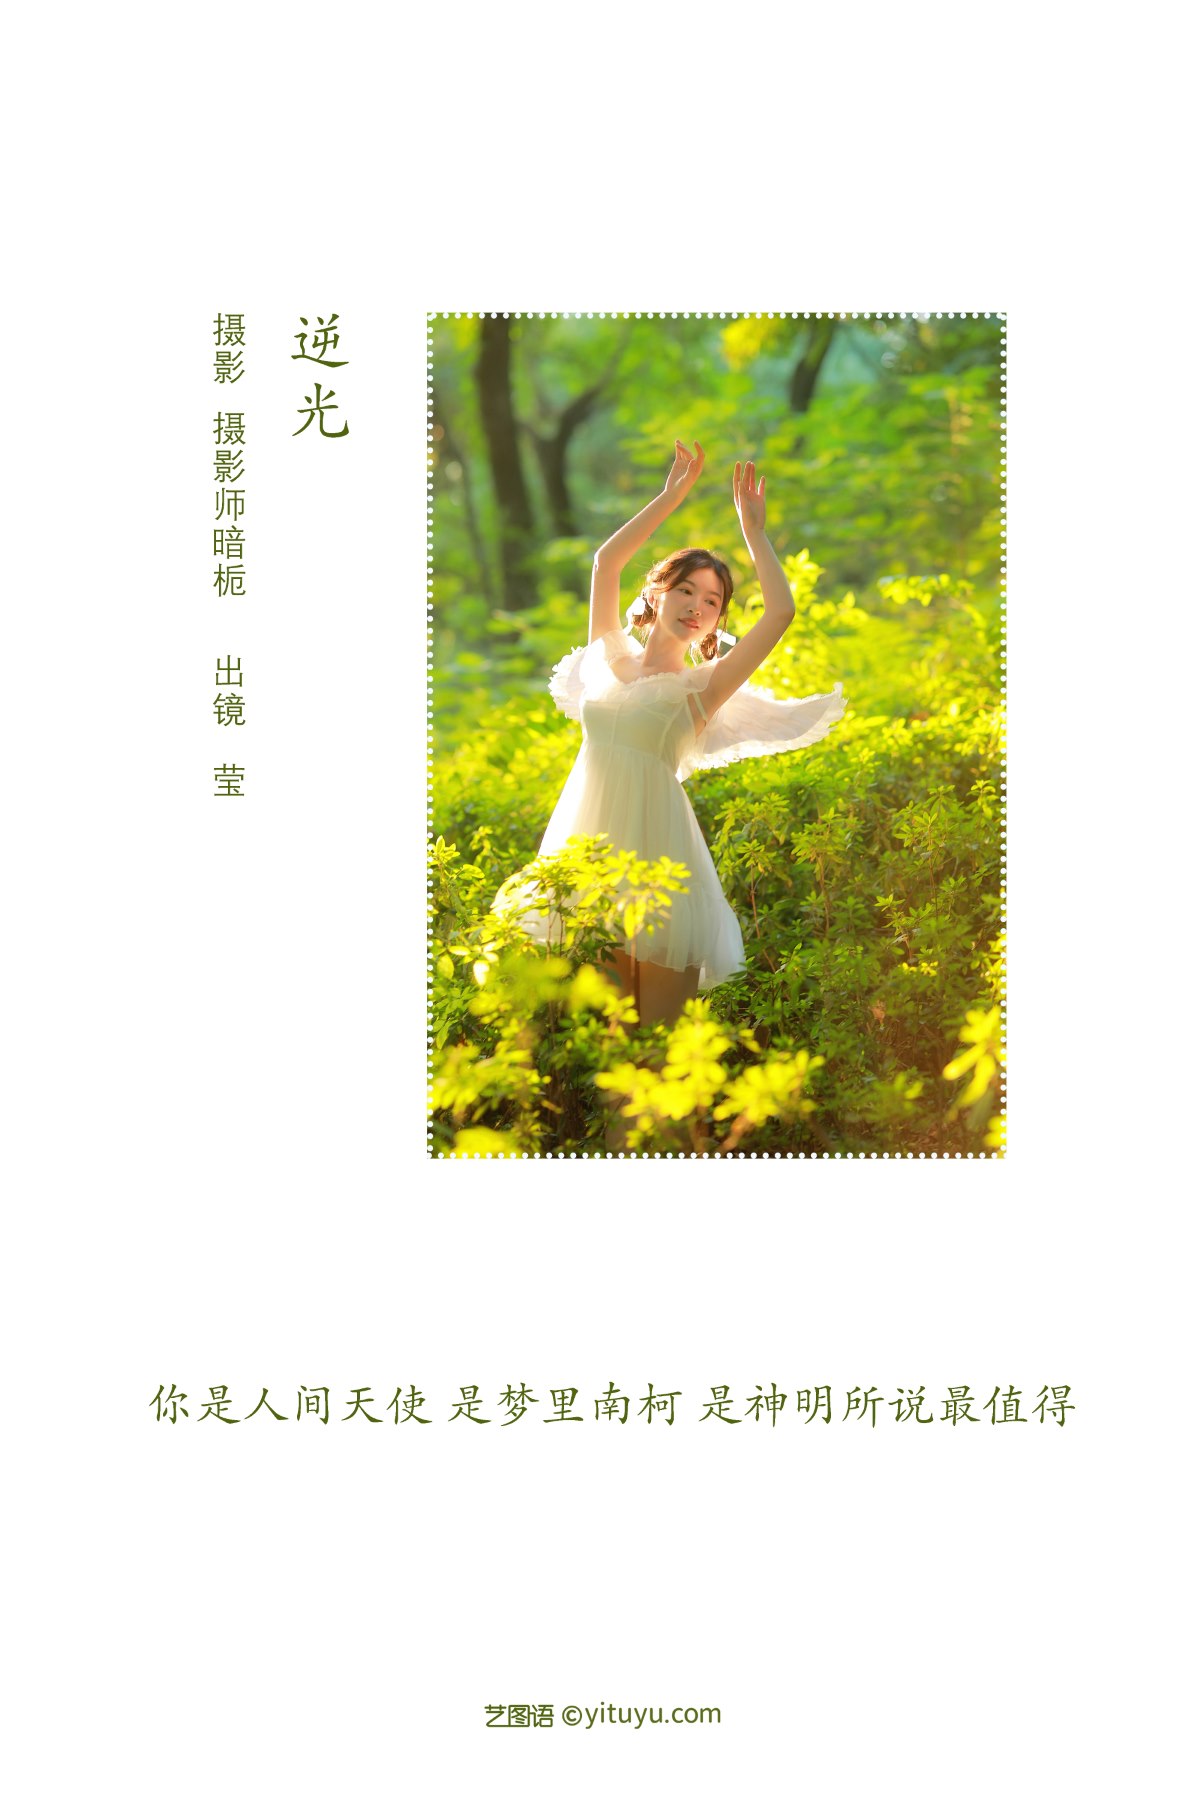 YiTuYu艺图语 Vol 2207 Ying 0001 0098502024.jpg